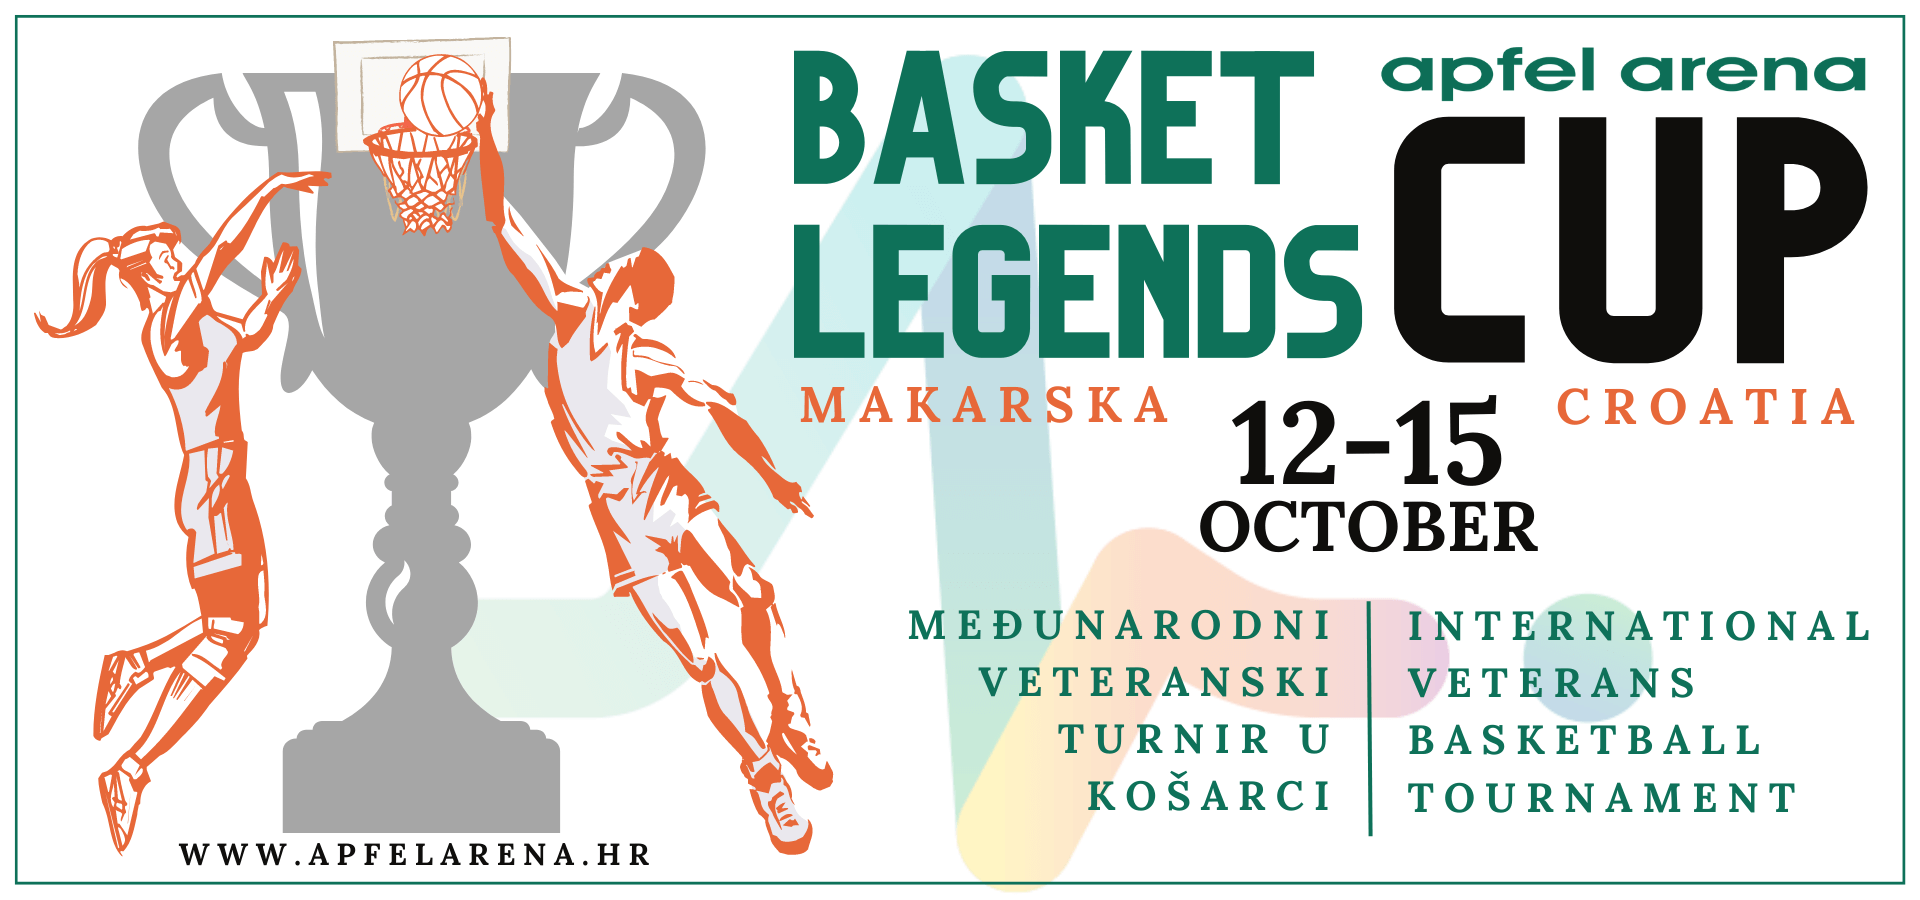 Basket-Legends-prijavnica-1920-×-900-piks